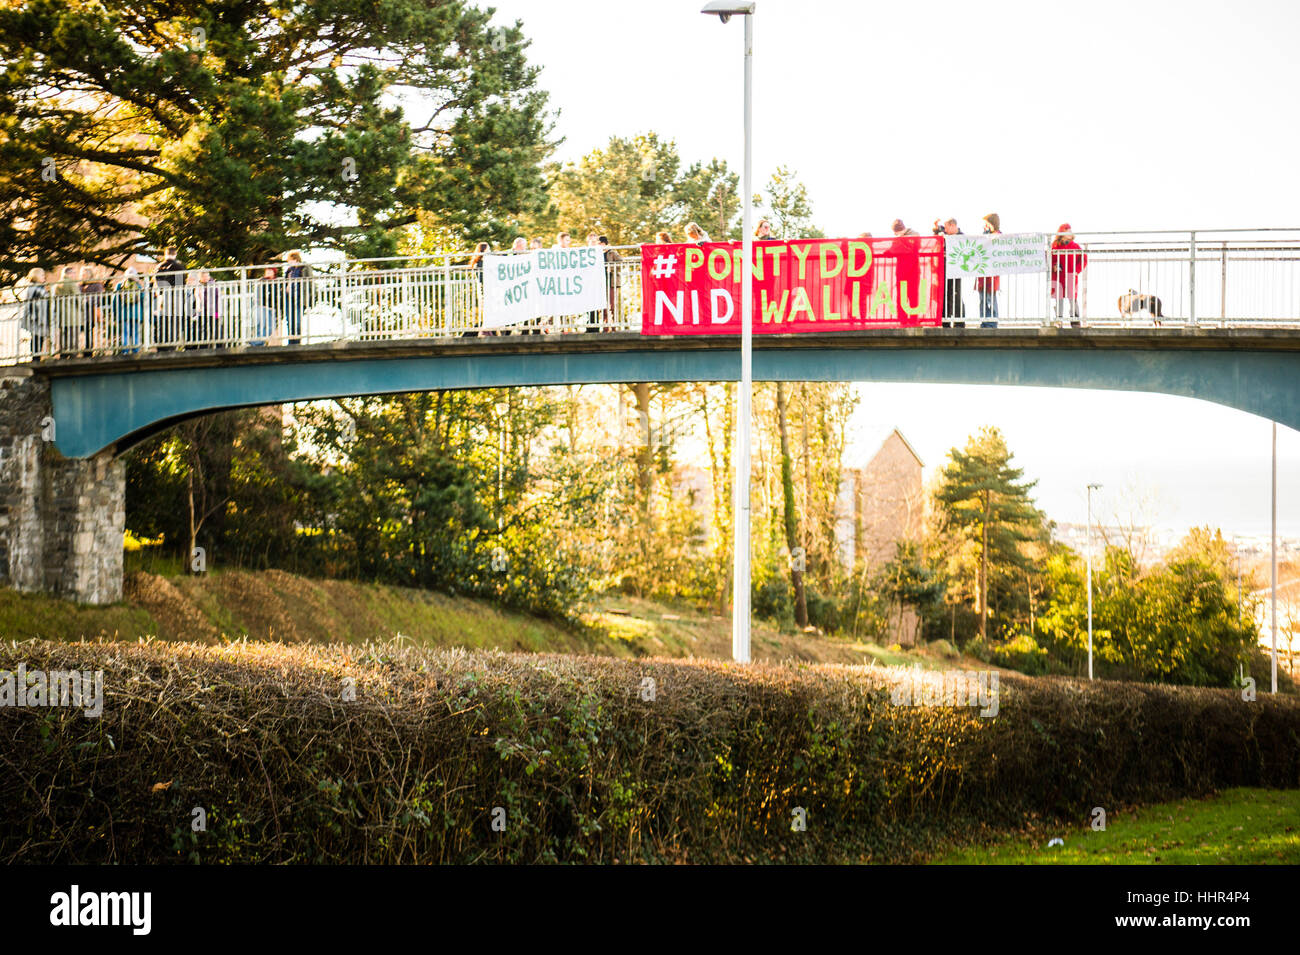 Vendredi 20 janvier 2017, le Pays de Galles Aberystwyth UK Construire des ponts pas des murs : à 11h le vendredi 20 mai 2017, les gens dévoilent leur bannières sur la passerelle au-dessus de la route principale dans le cadre de l'Aberystwyth UK-bannière large drop des ponts à travers le pays, le jour que l'atout de Donald est nommé le nouveau président des États-Unis. Selon les organisateurs, ils veulent "d'envoyer un simple message d'espoir, et sans équivoque. Nous allons construire des ponts, pas des murs, d'un monde pacifique et juste se débarrasser de l'oppression et de la haine." Photo : Keith Morris / Alamy Vivre NewsBuo Banque D'Images